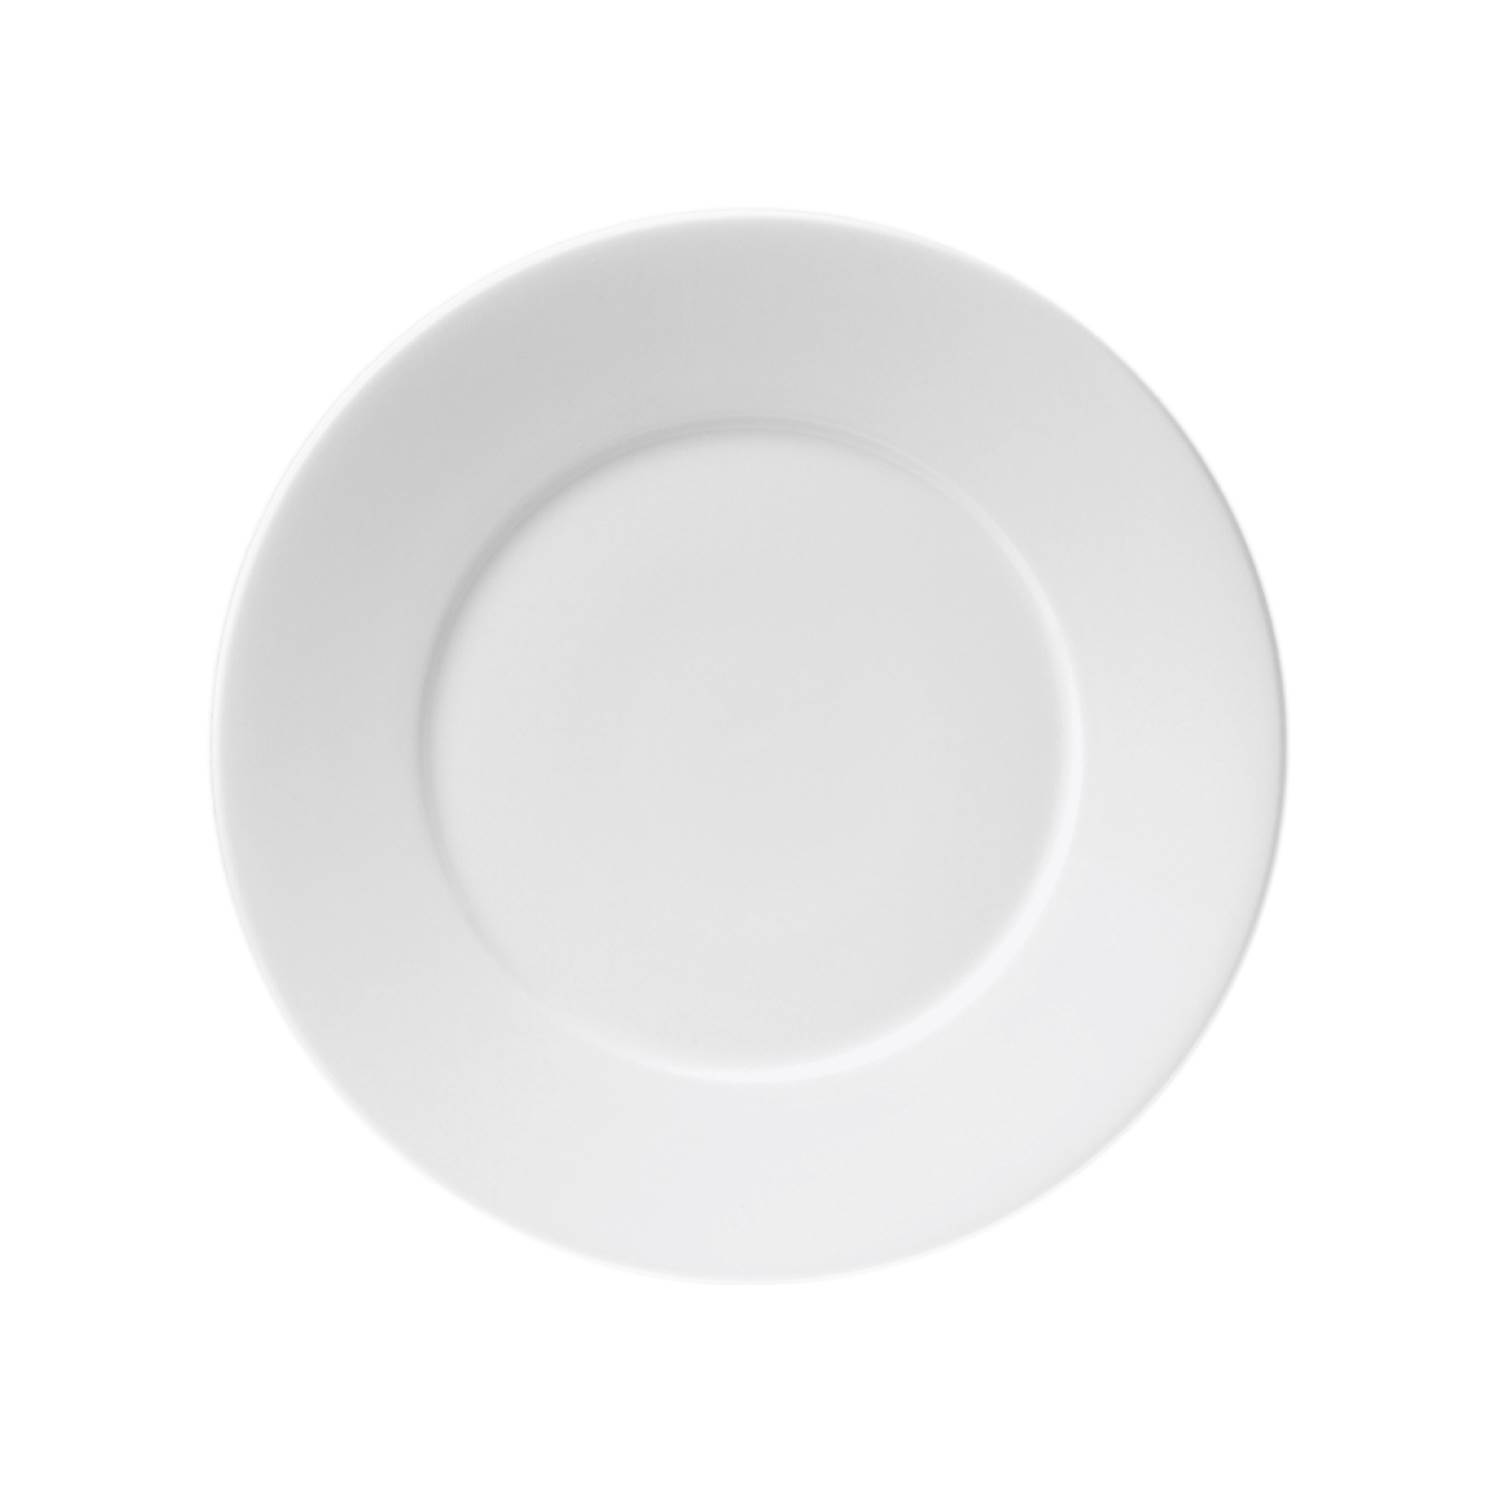 Baralee Simple Plus Flat Plate Wide Rim 